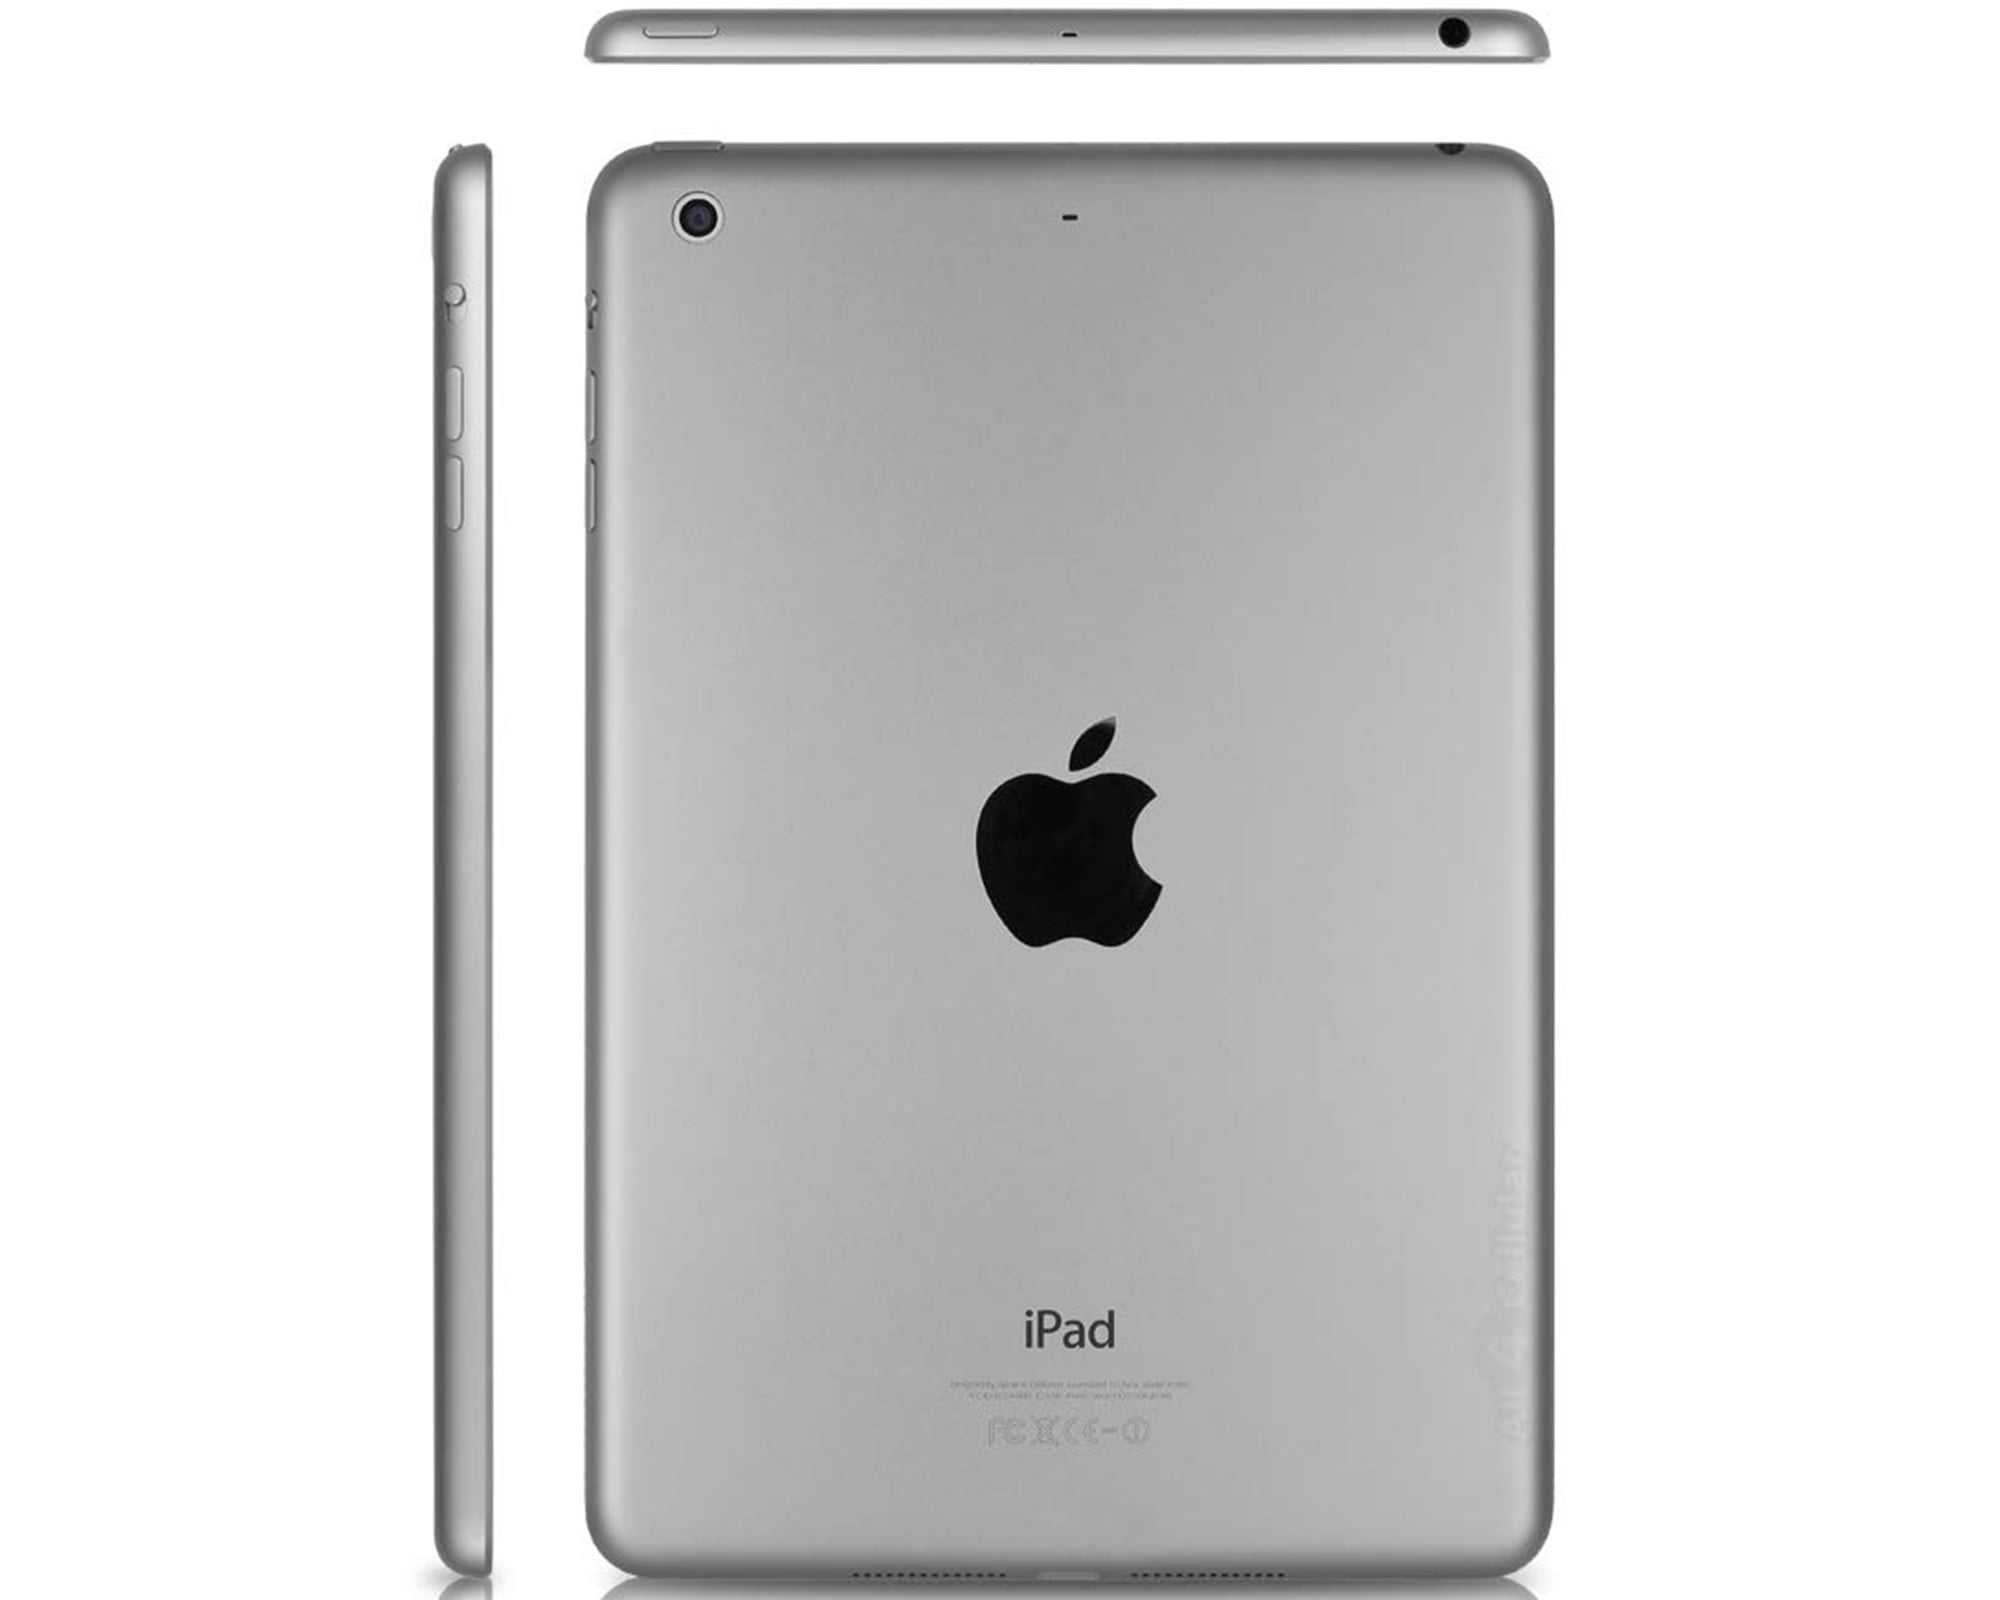 Apple 7.9-inch Retina iPad Mini 2, Wi-Fi Only, 16GB, Comes in 